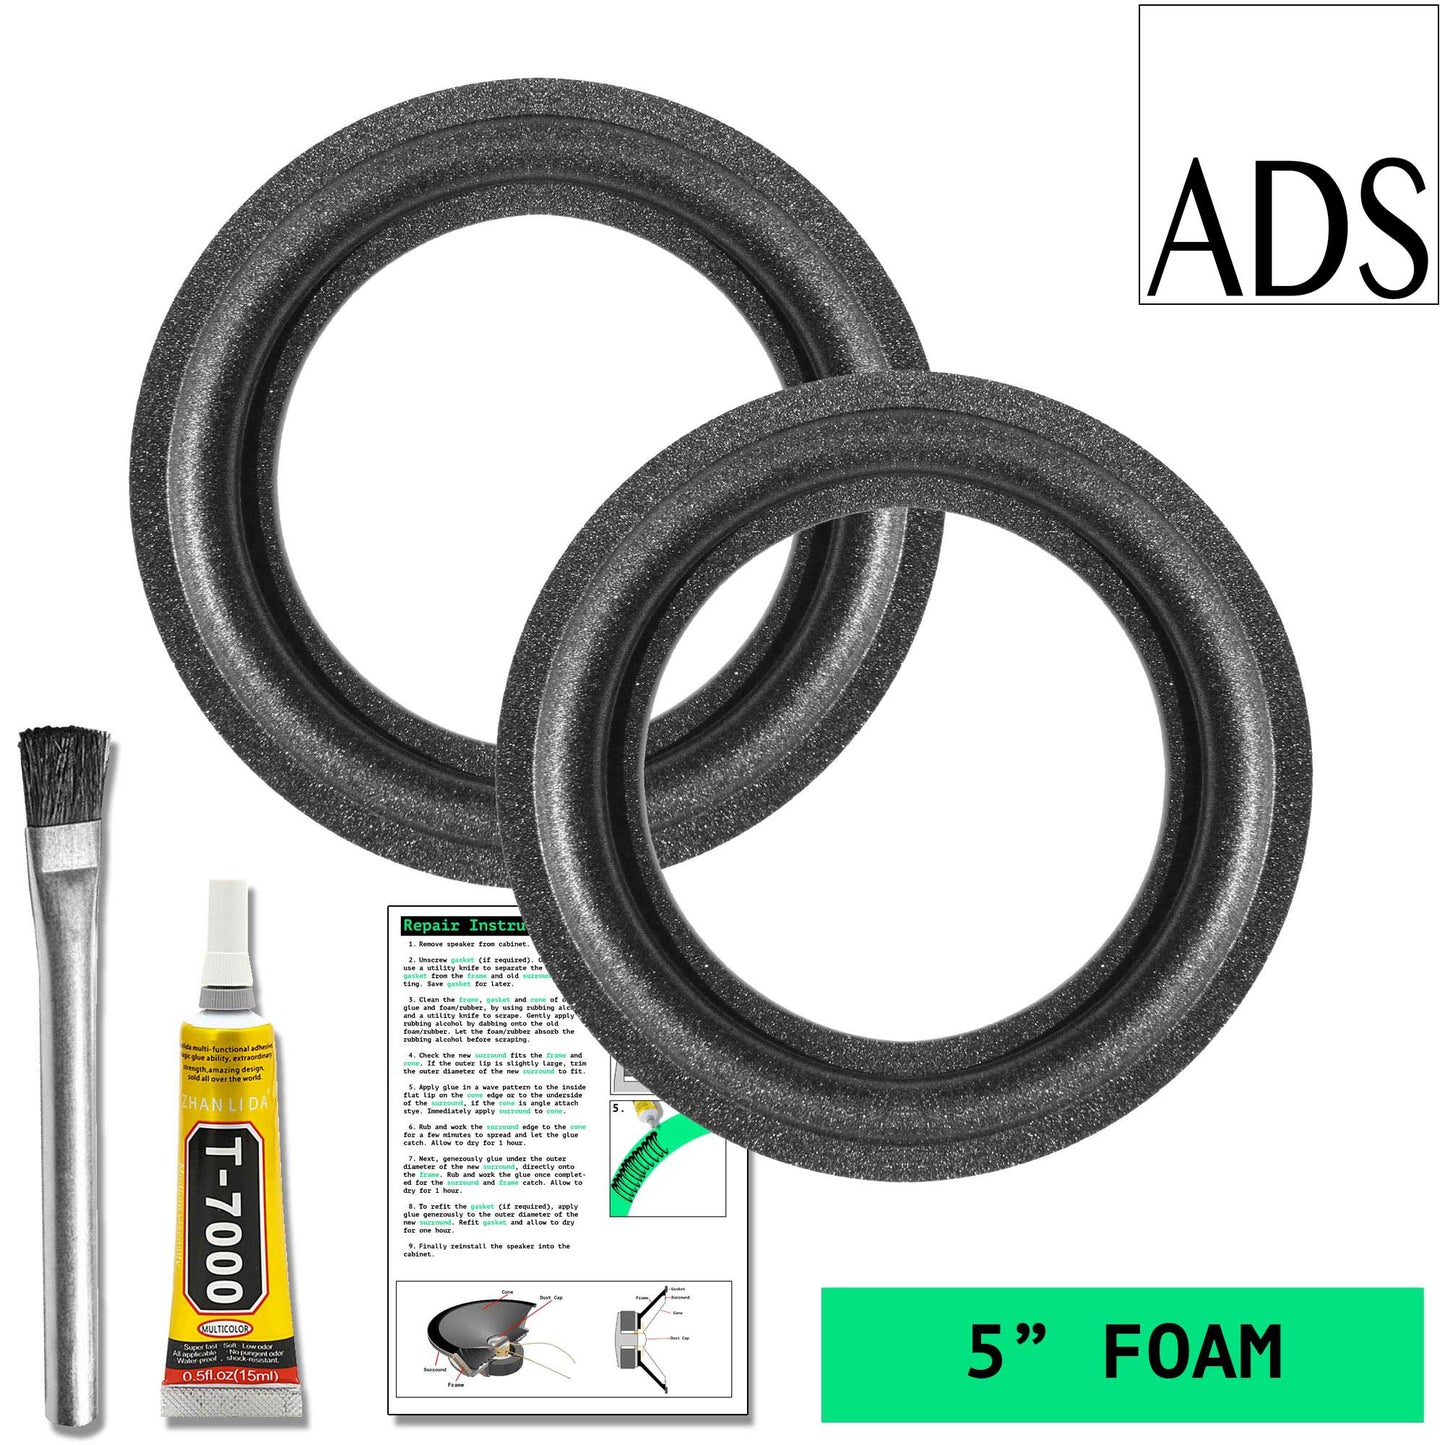 ADS 5" Foam Repair Kit